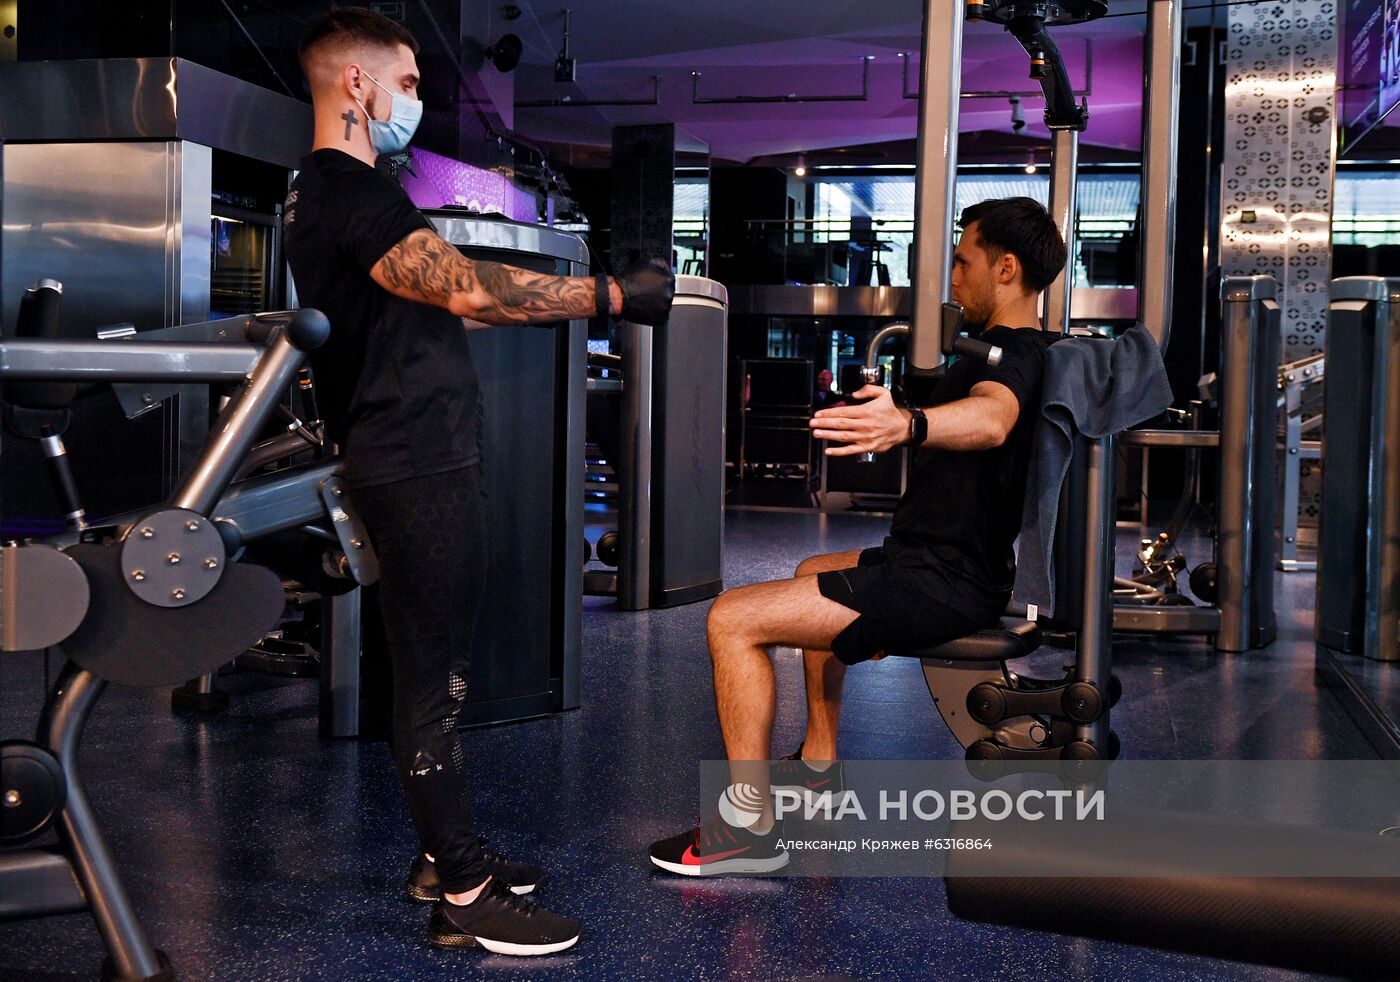 Возобновление работы фитнес-центров после карантина в Новосибирске